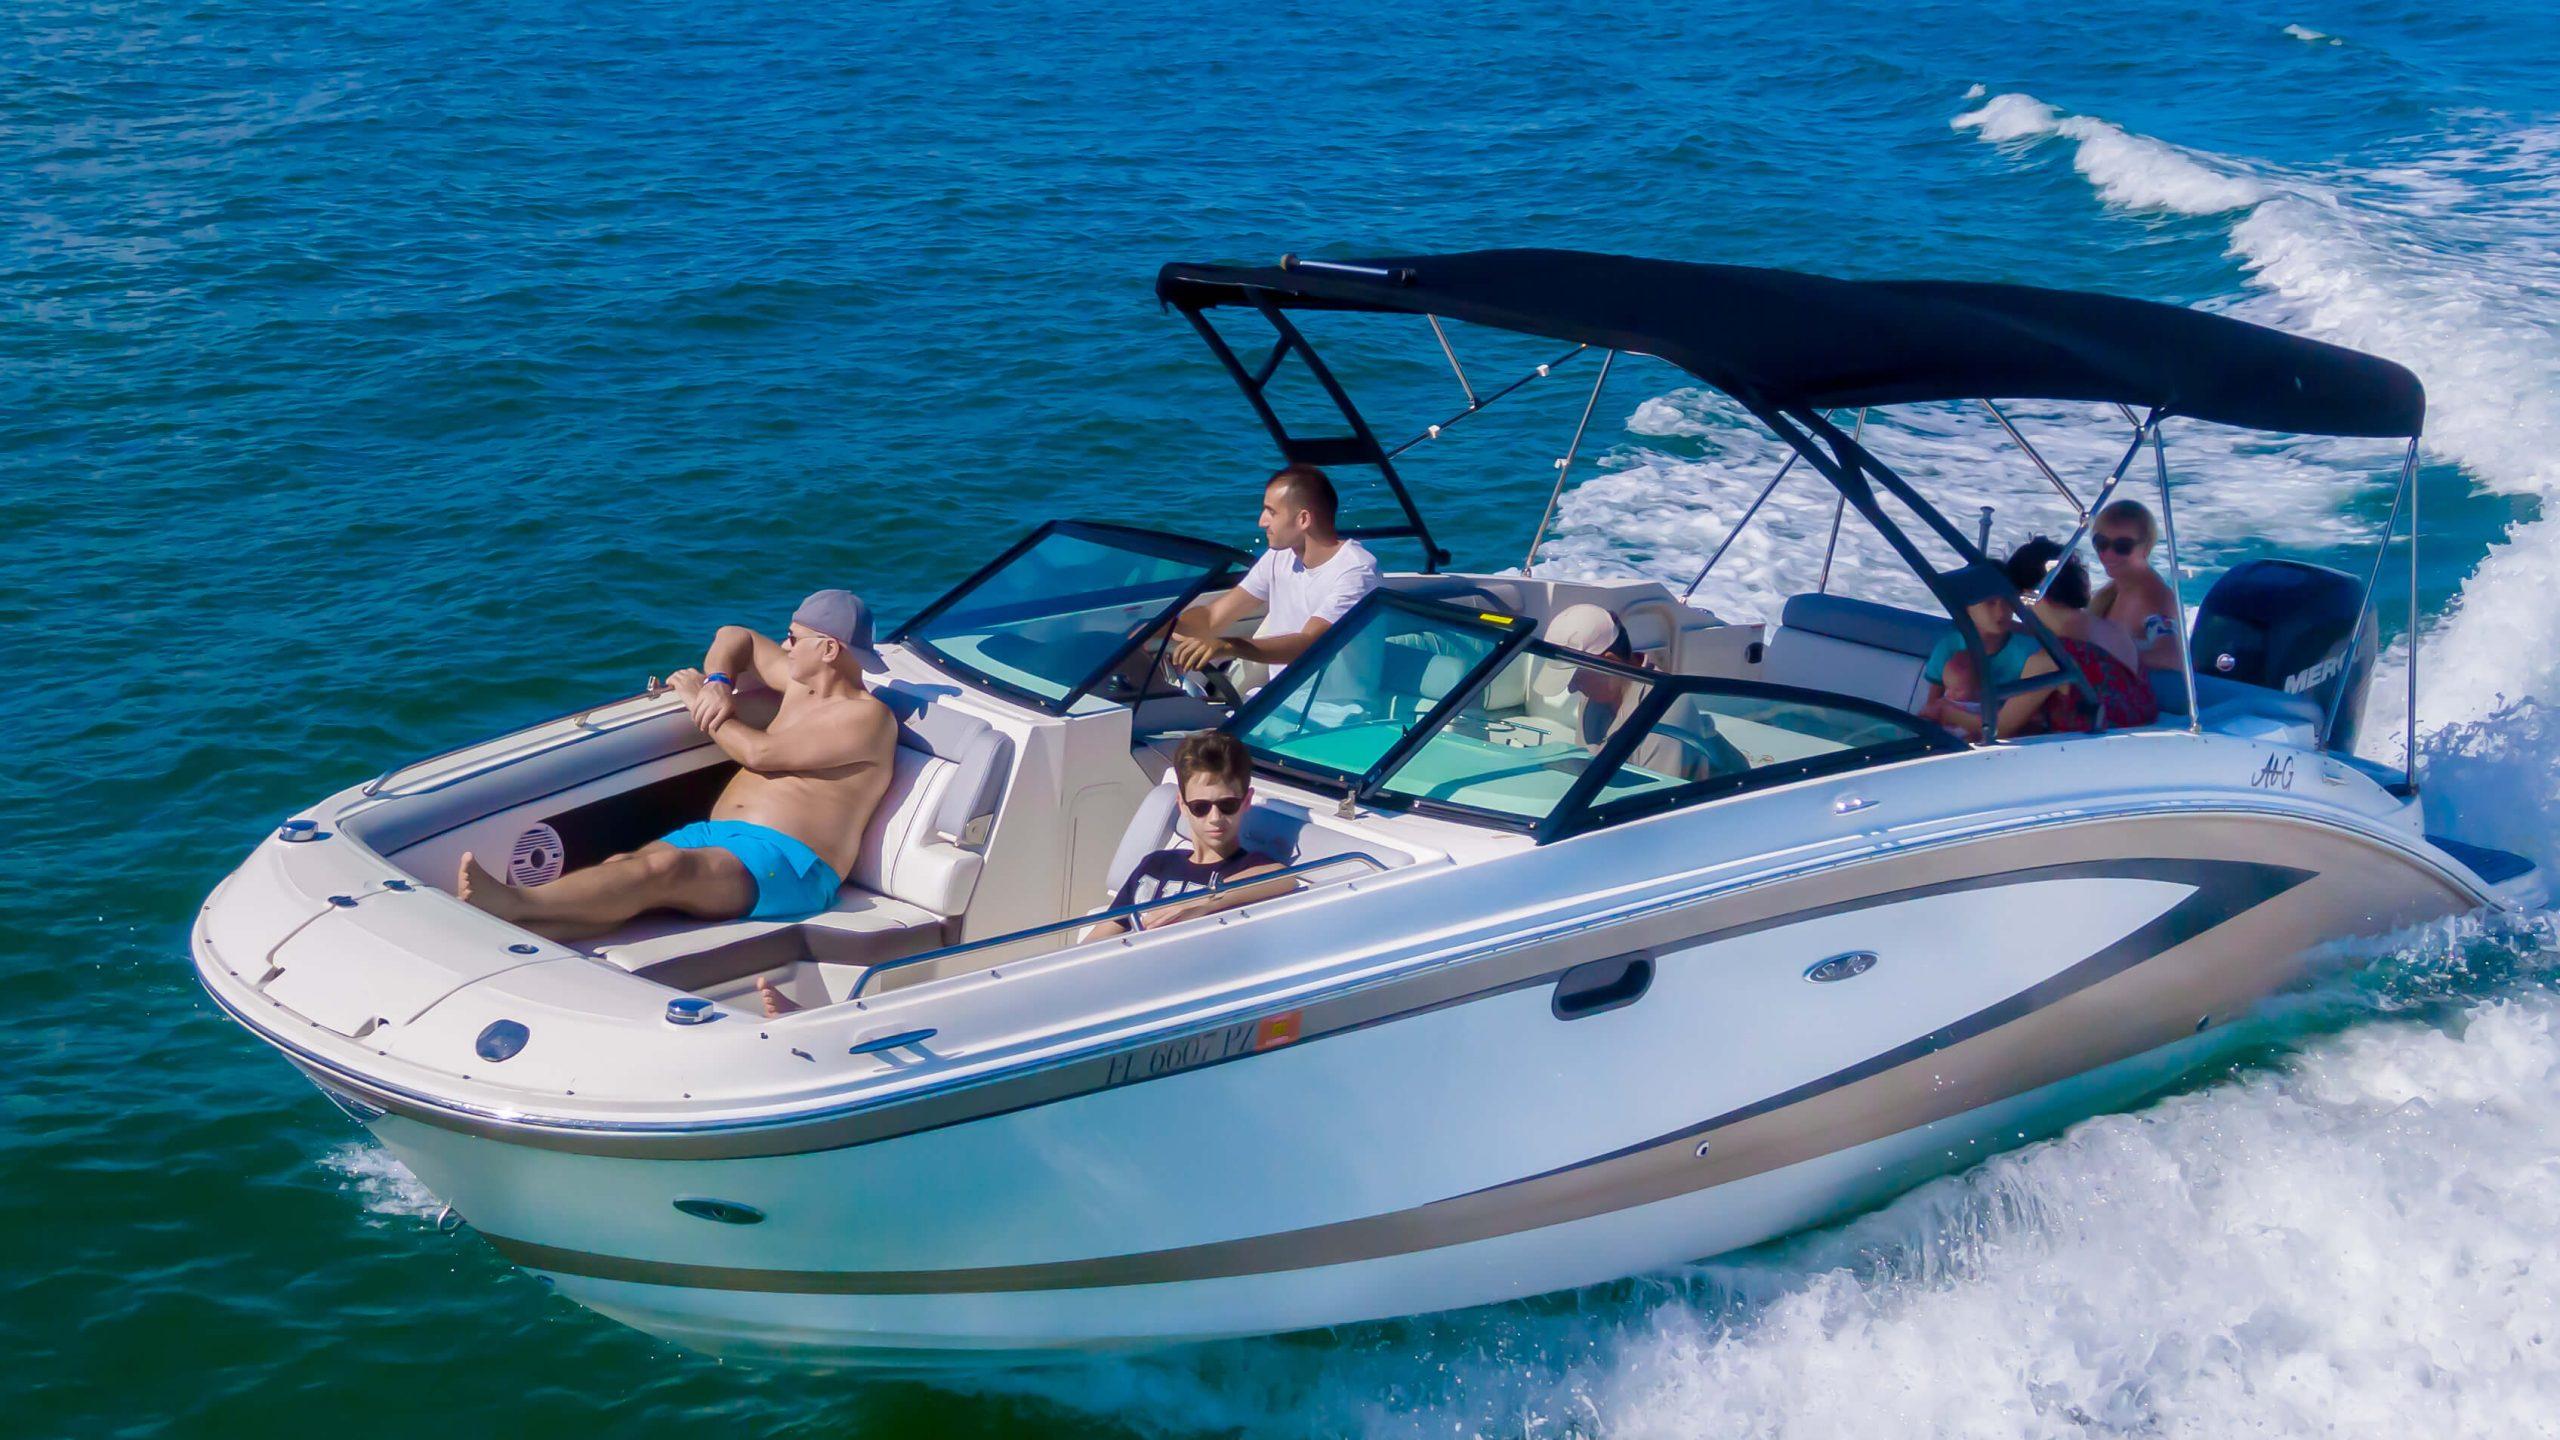 Reserve a Miami Boat Charter at Aquarius Boat Rentals!